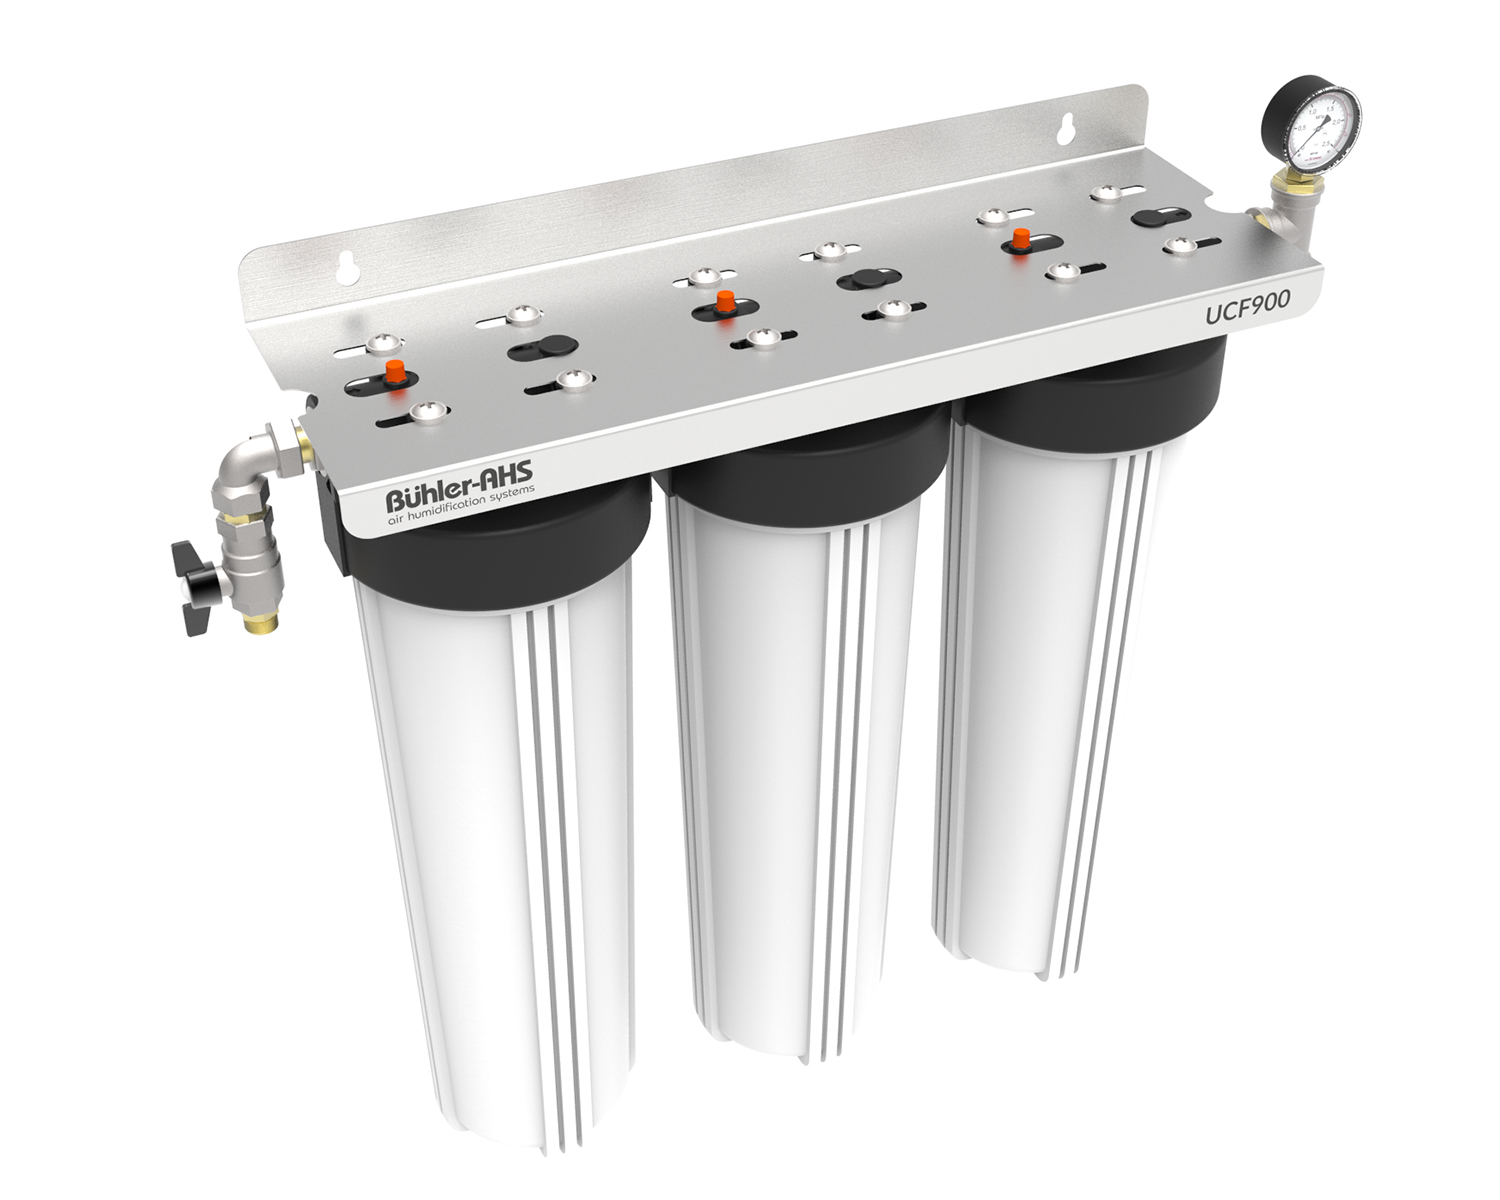 Внешний ультракарбоновый фильтр UCF900 для системы увлажнения Buhler-AHS S18UV